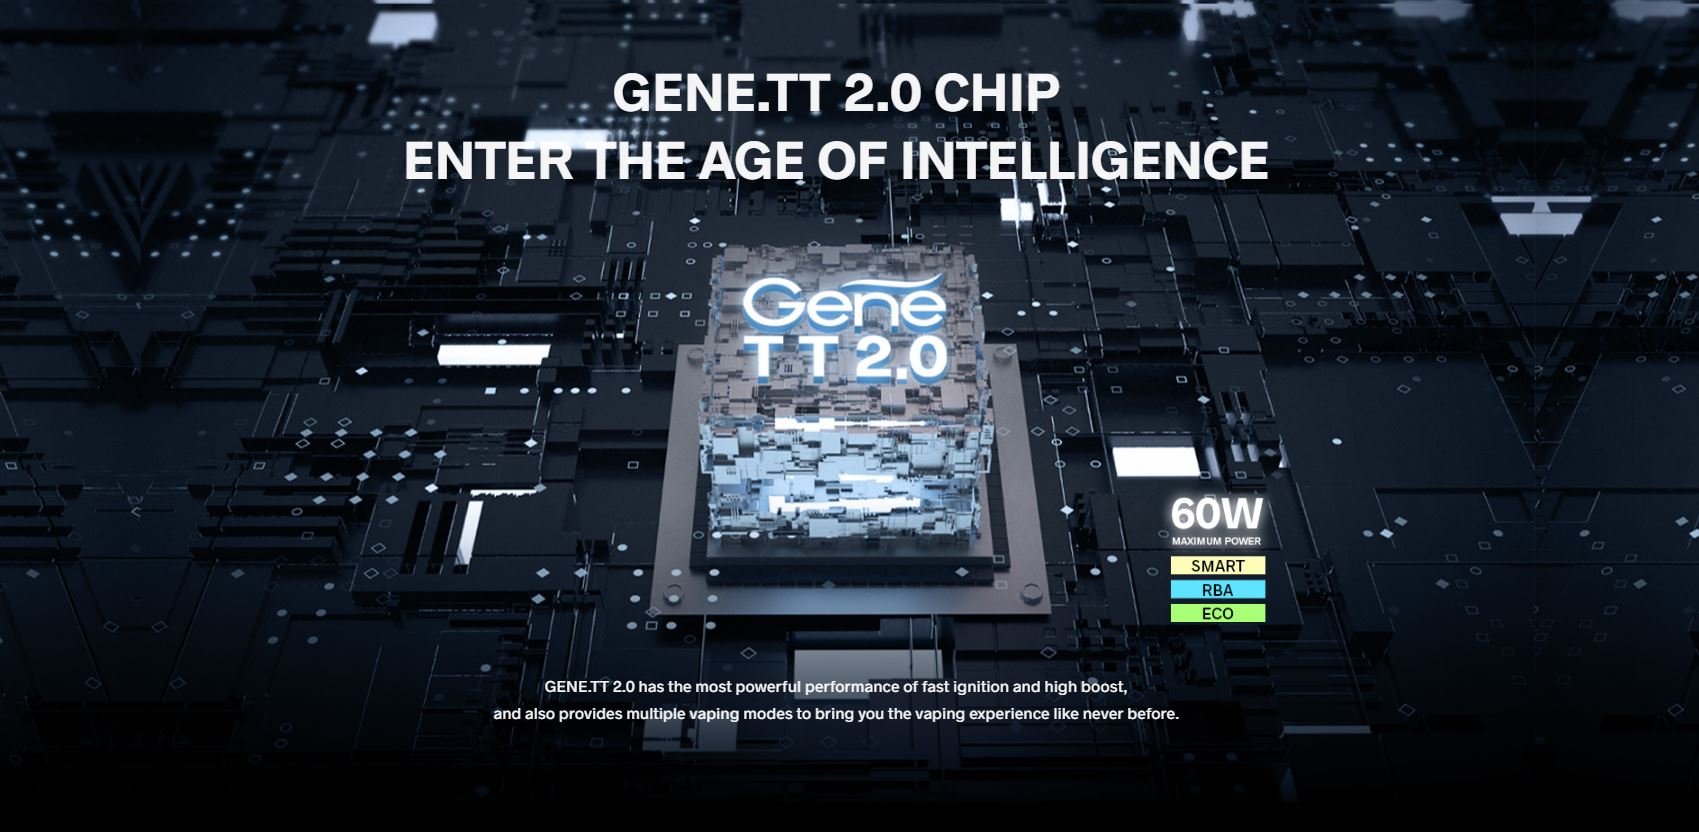 chip gene TT 2